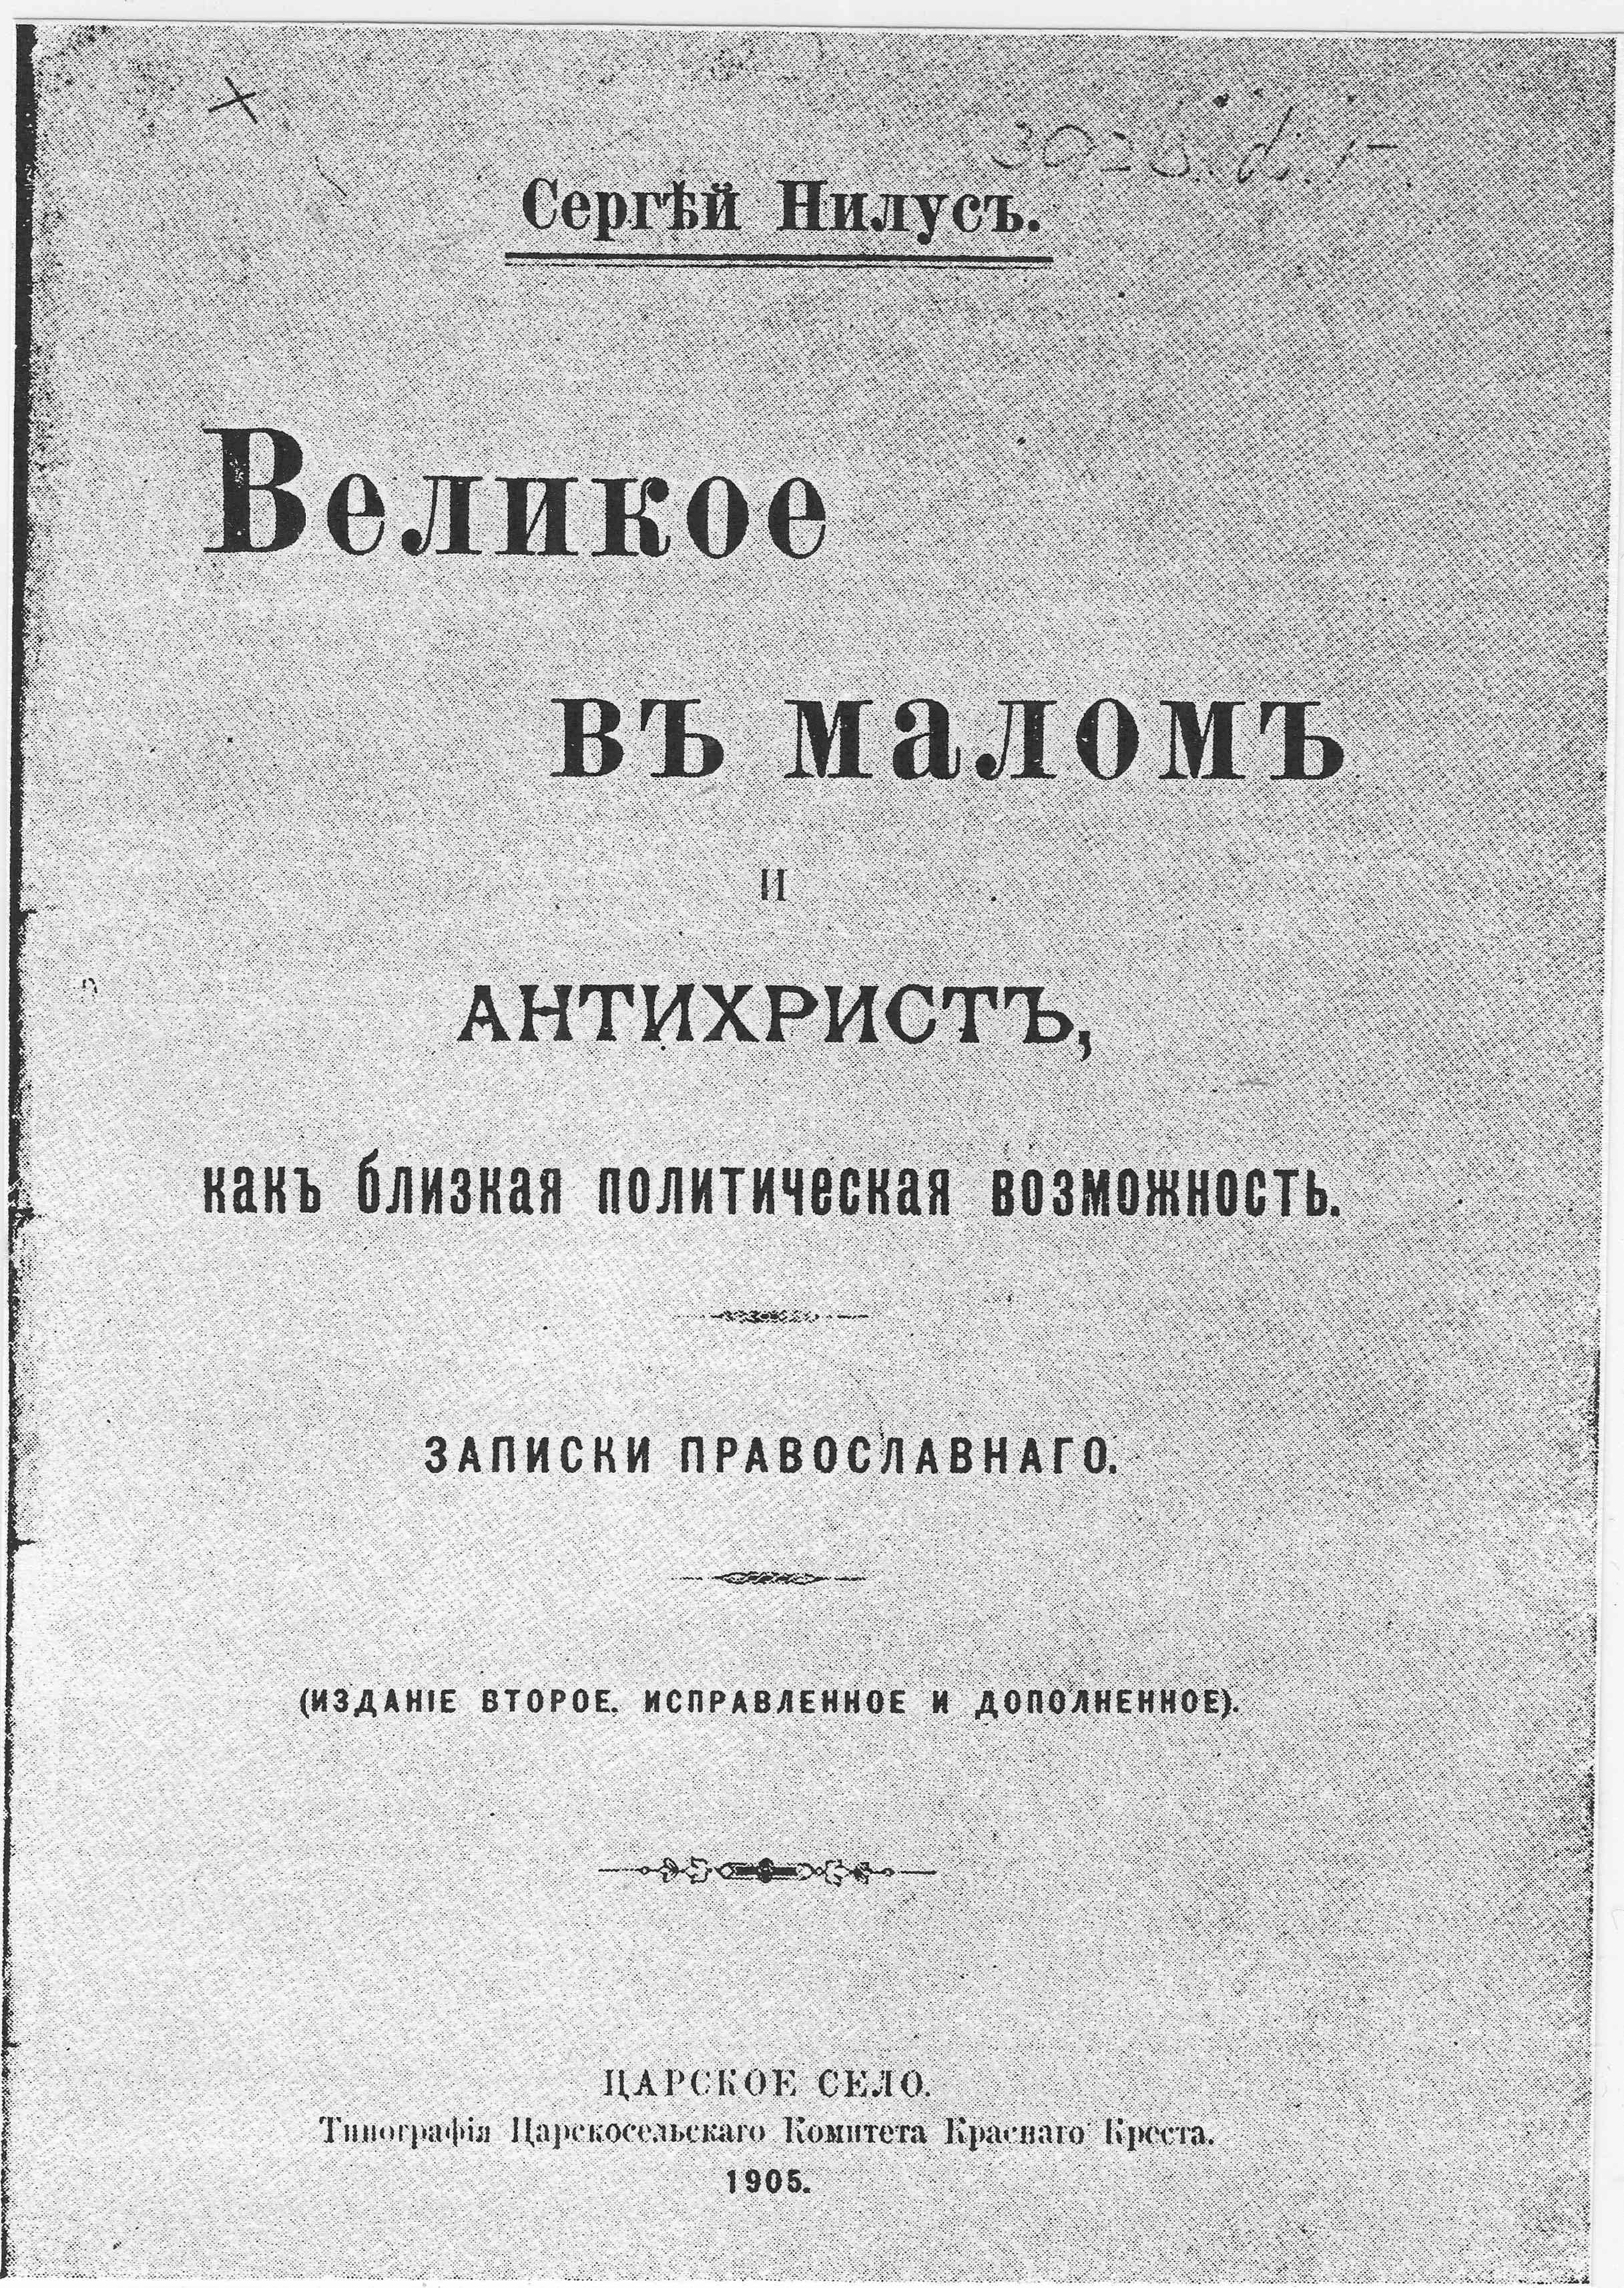 La 2ème édition de 1905 du livre de Nilus Le Gran dans le Petit et l’Antéchrist - une possibilité        politique prochaine , intégrant les Protocoles